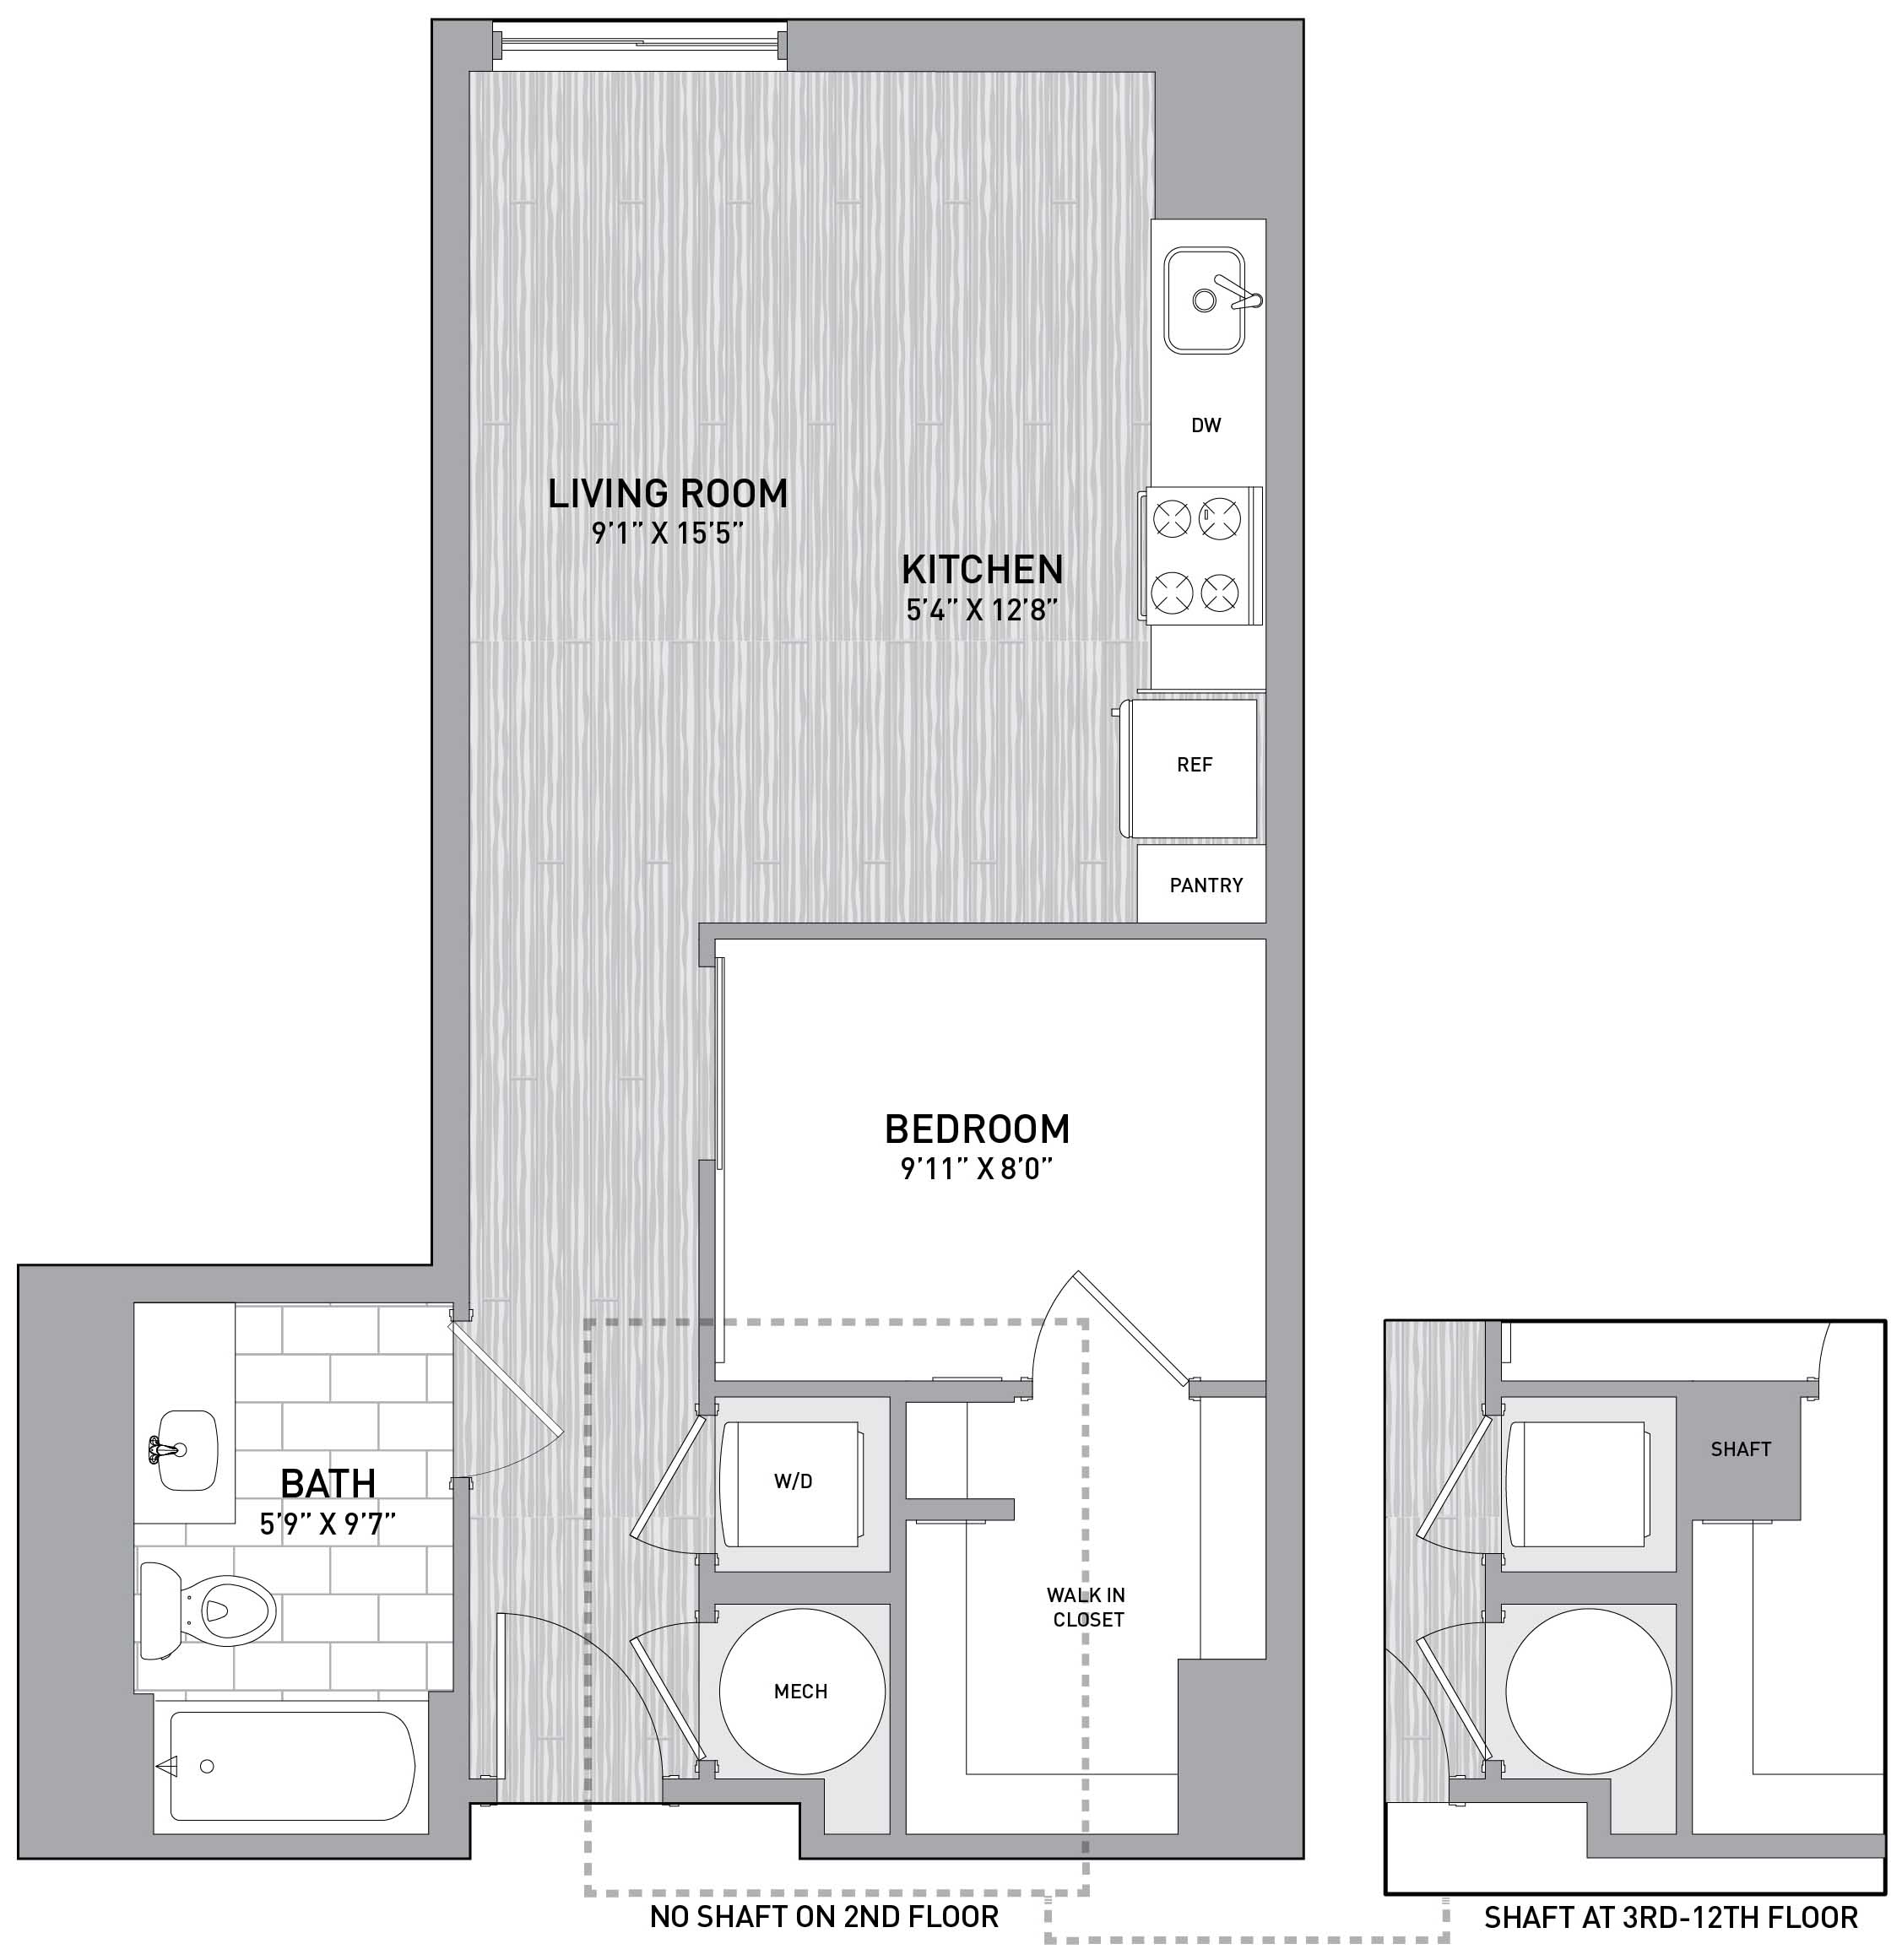 Floorplan Image of unit 151-1116